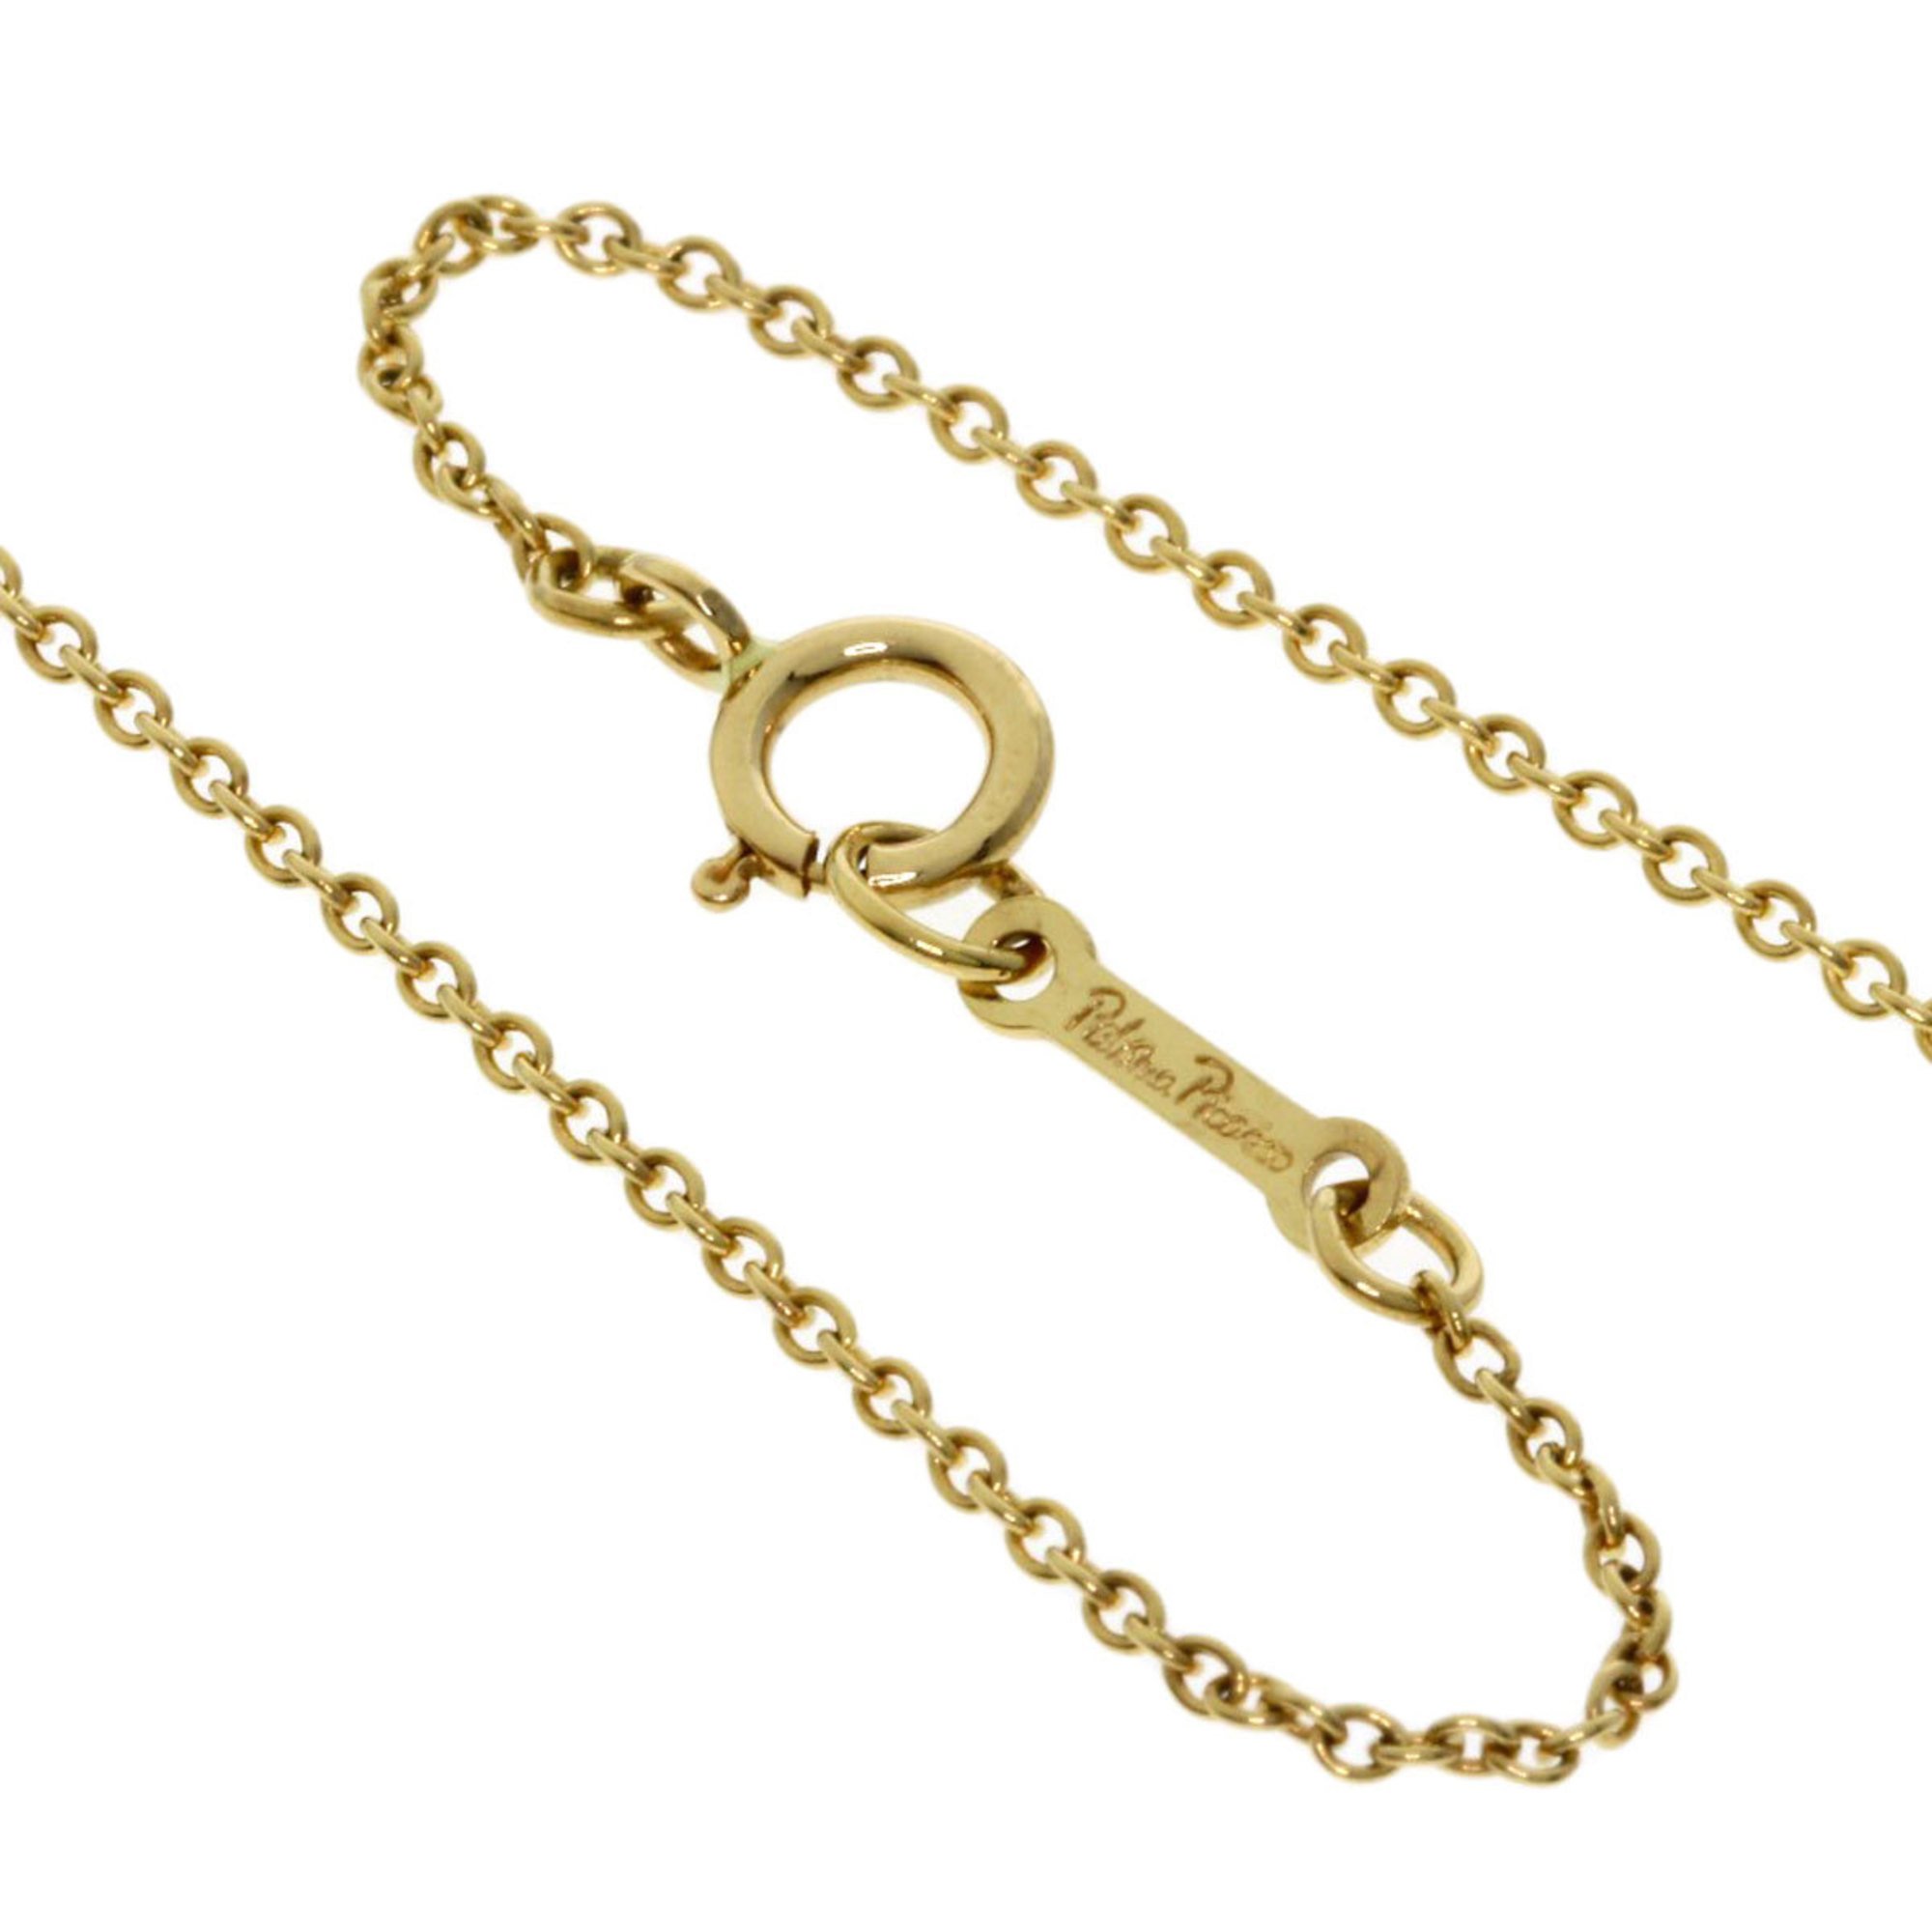 Tiffany Loving Heart Necklace, 18K Yellow Gold, Women's, TIFFANY&Co.